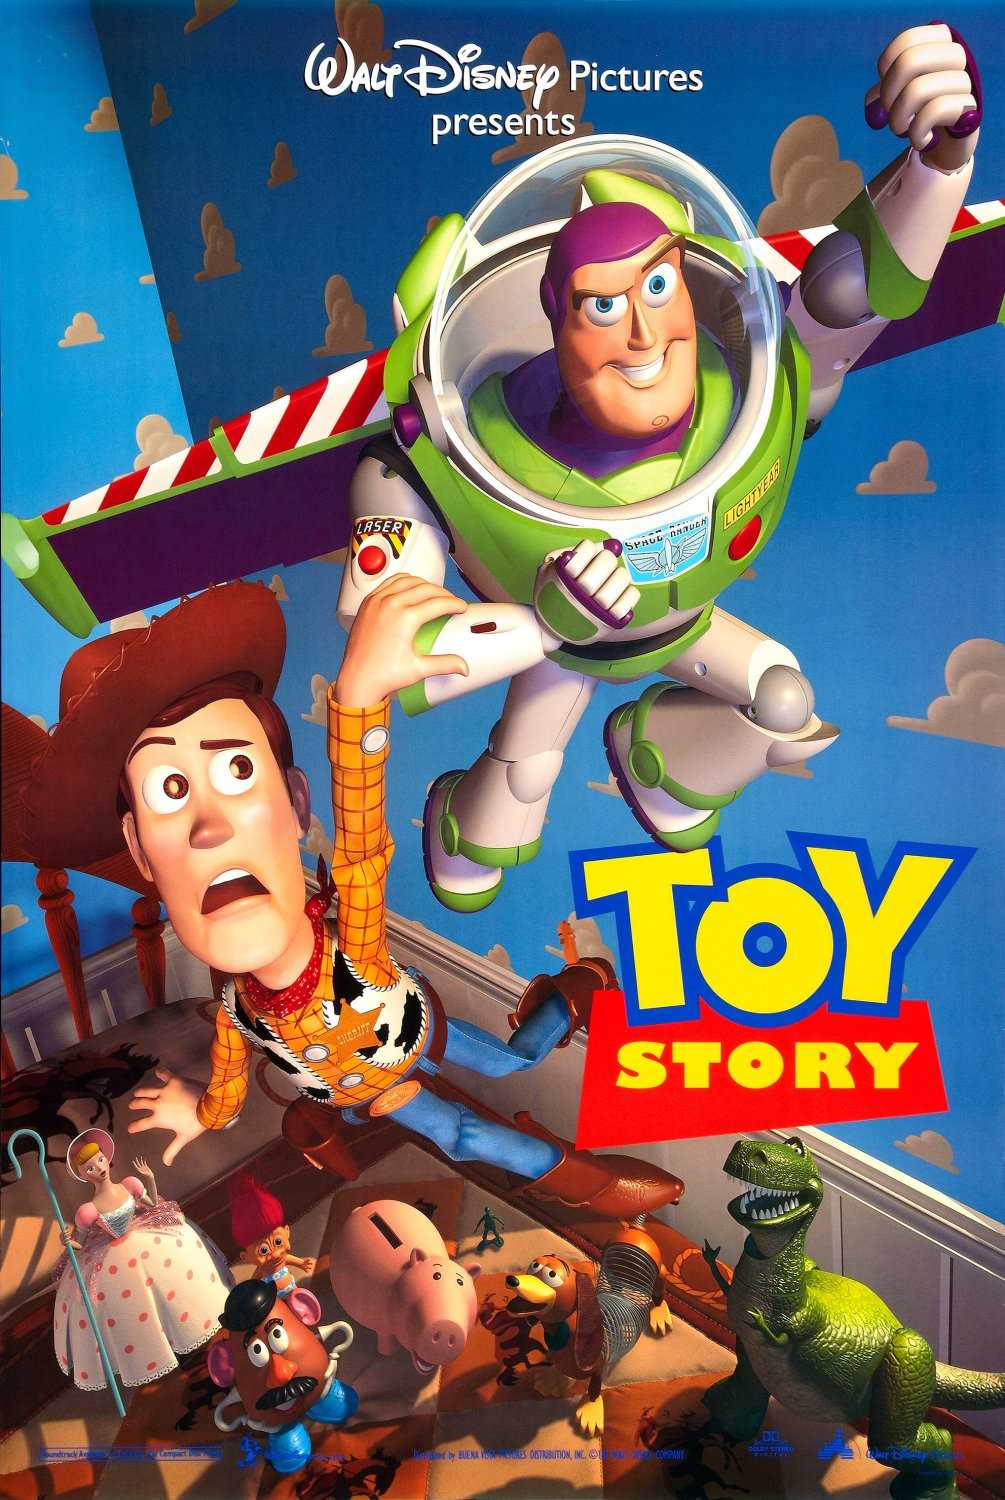 FULL MOVIE: Toy Story (1995)